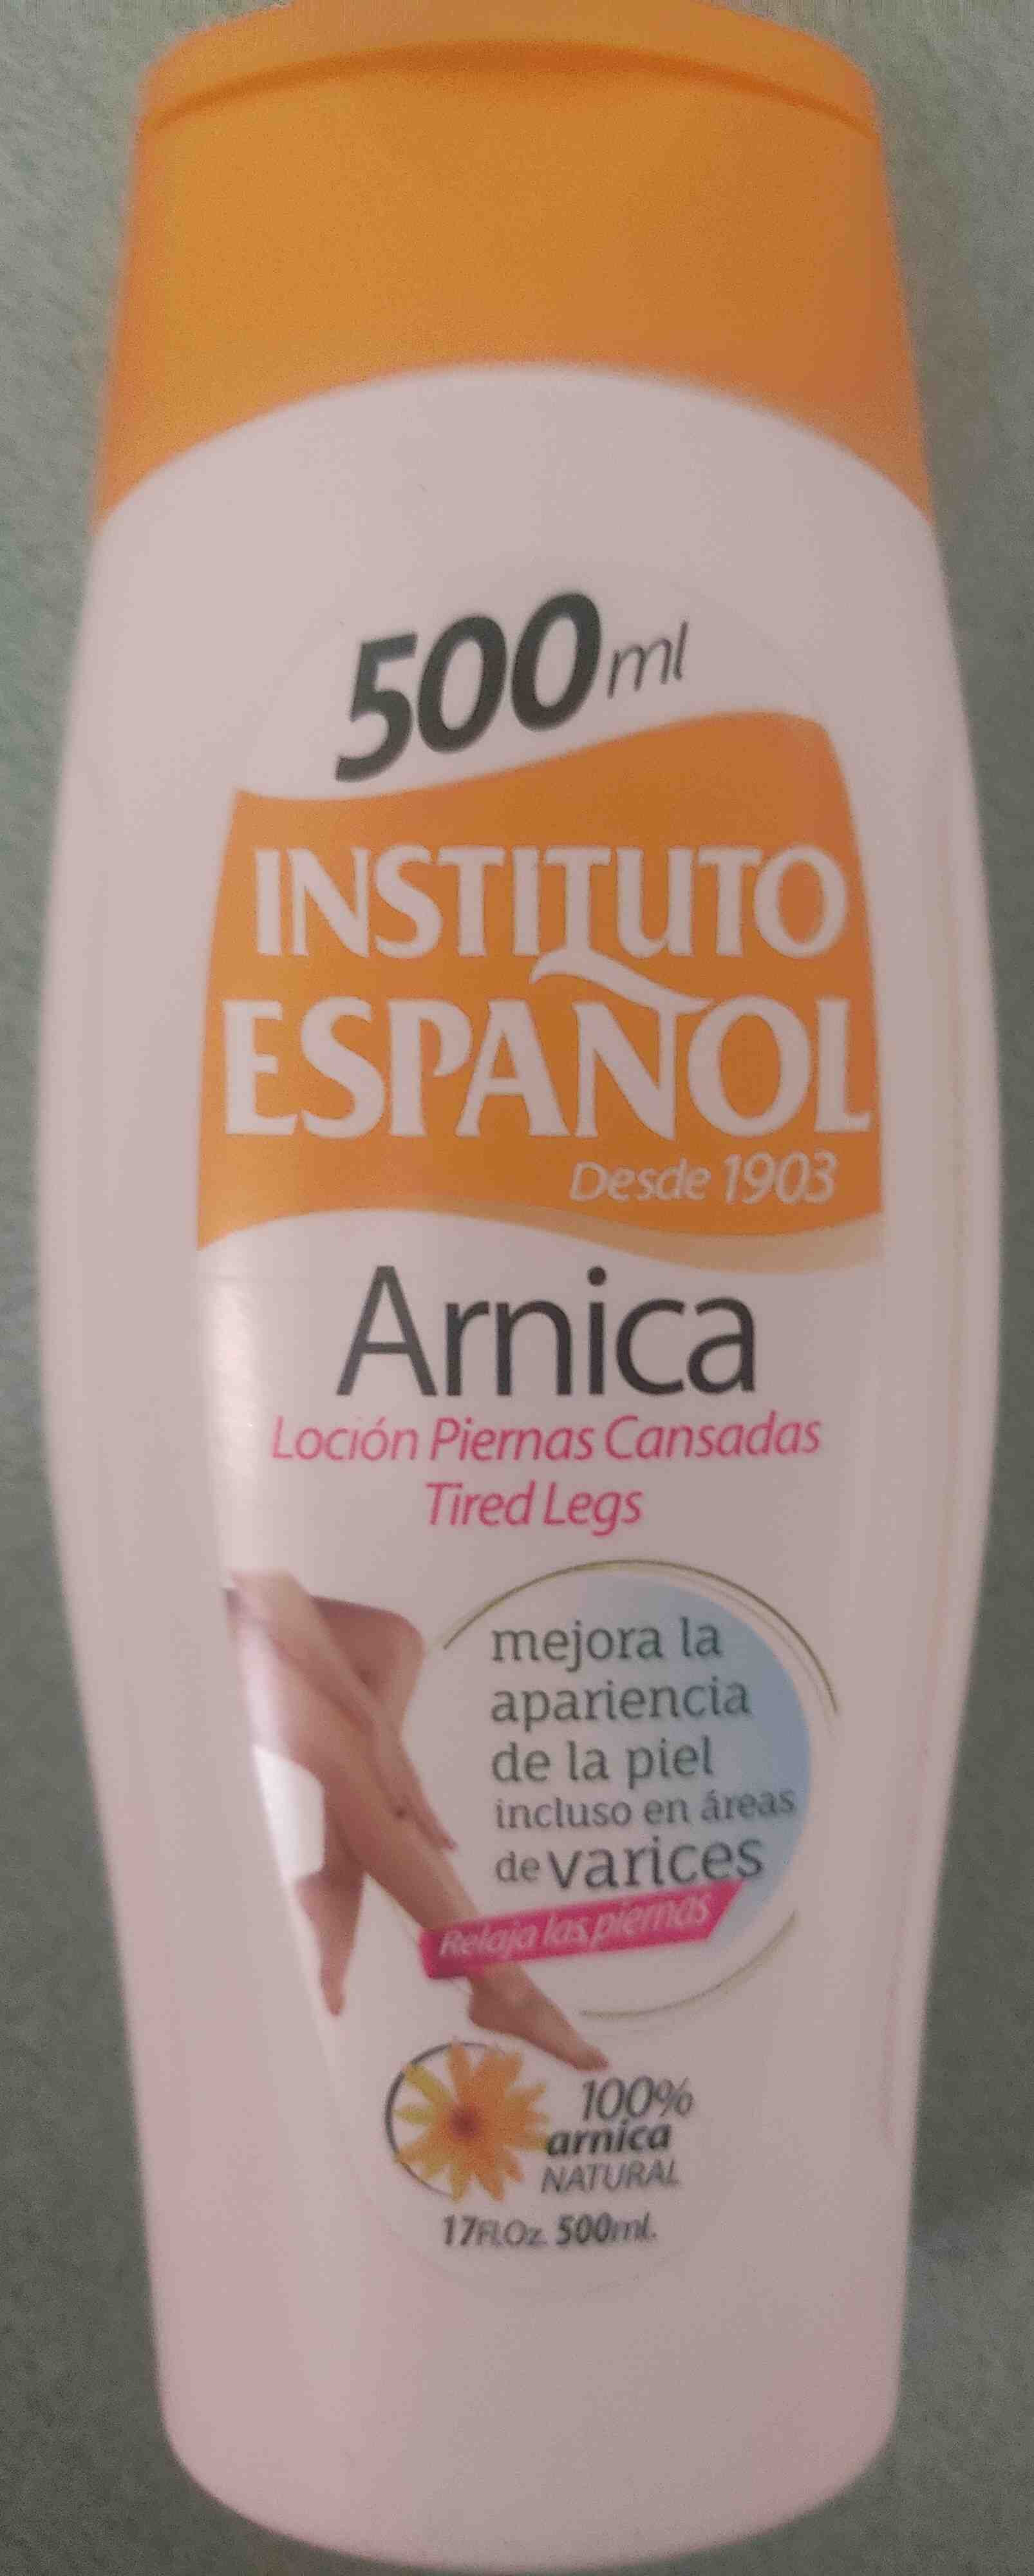 Locion para Piernas Cansadas con Arnica (Instituto Espanol) - Product - en